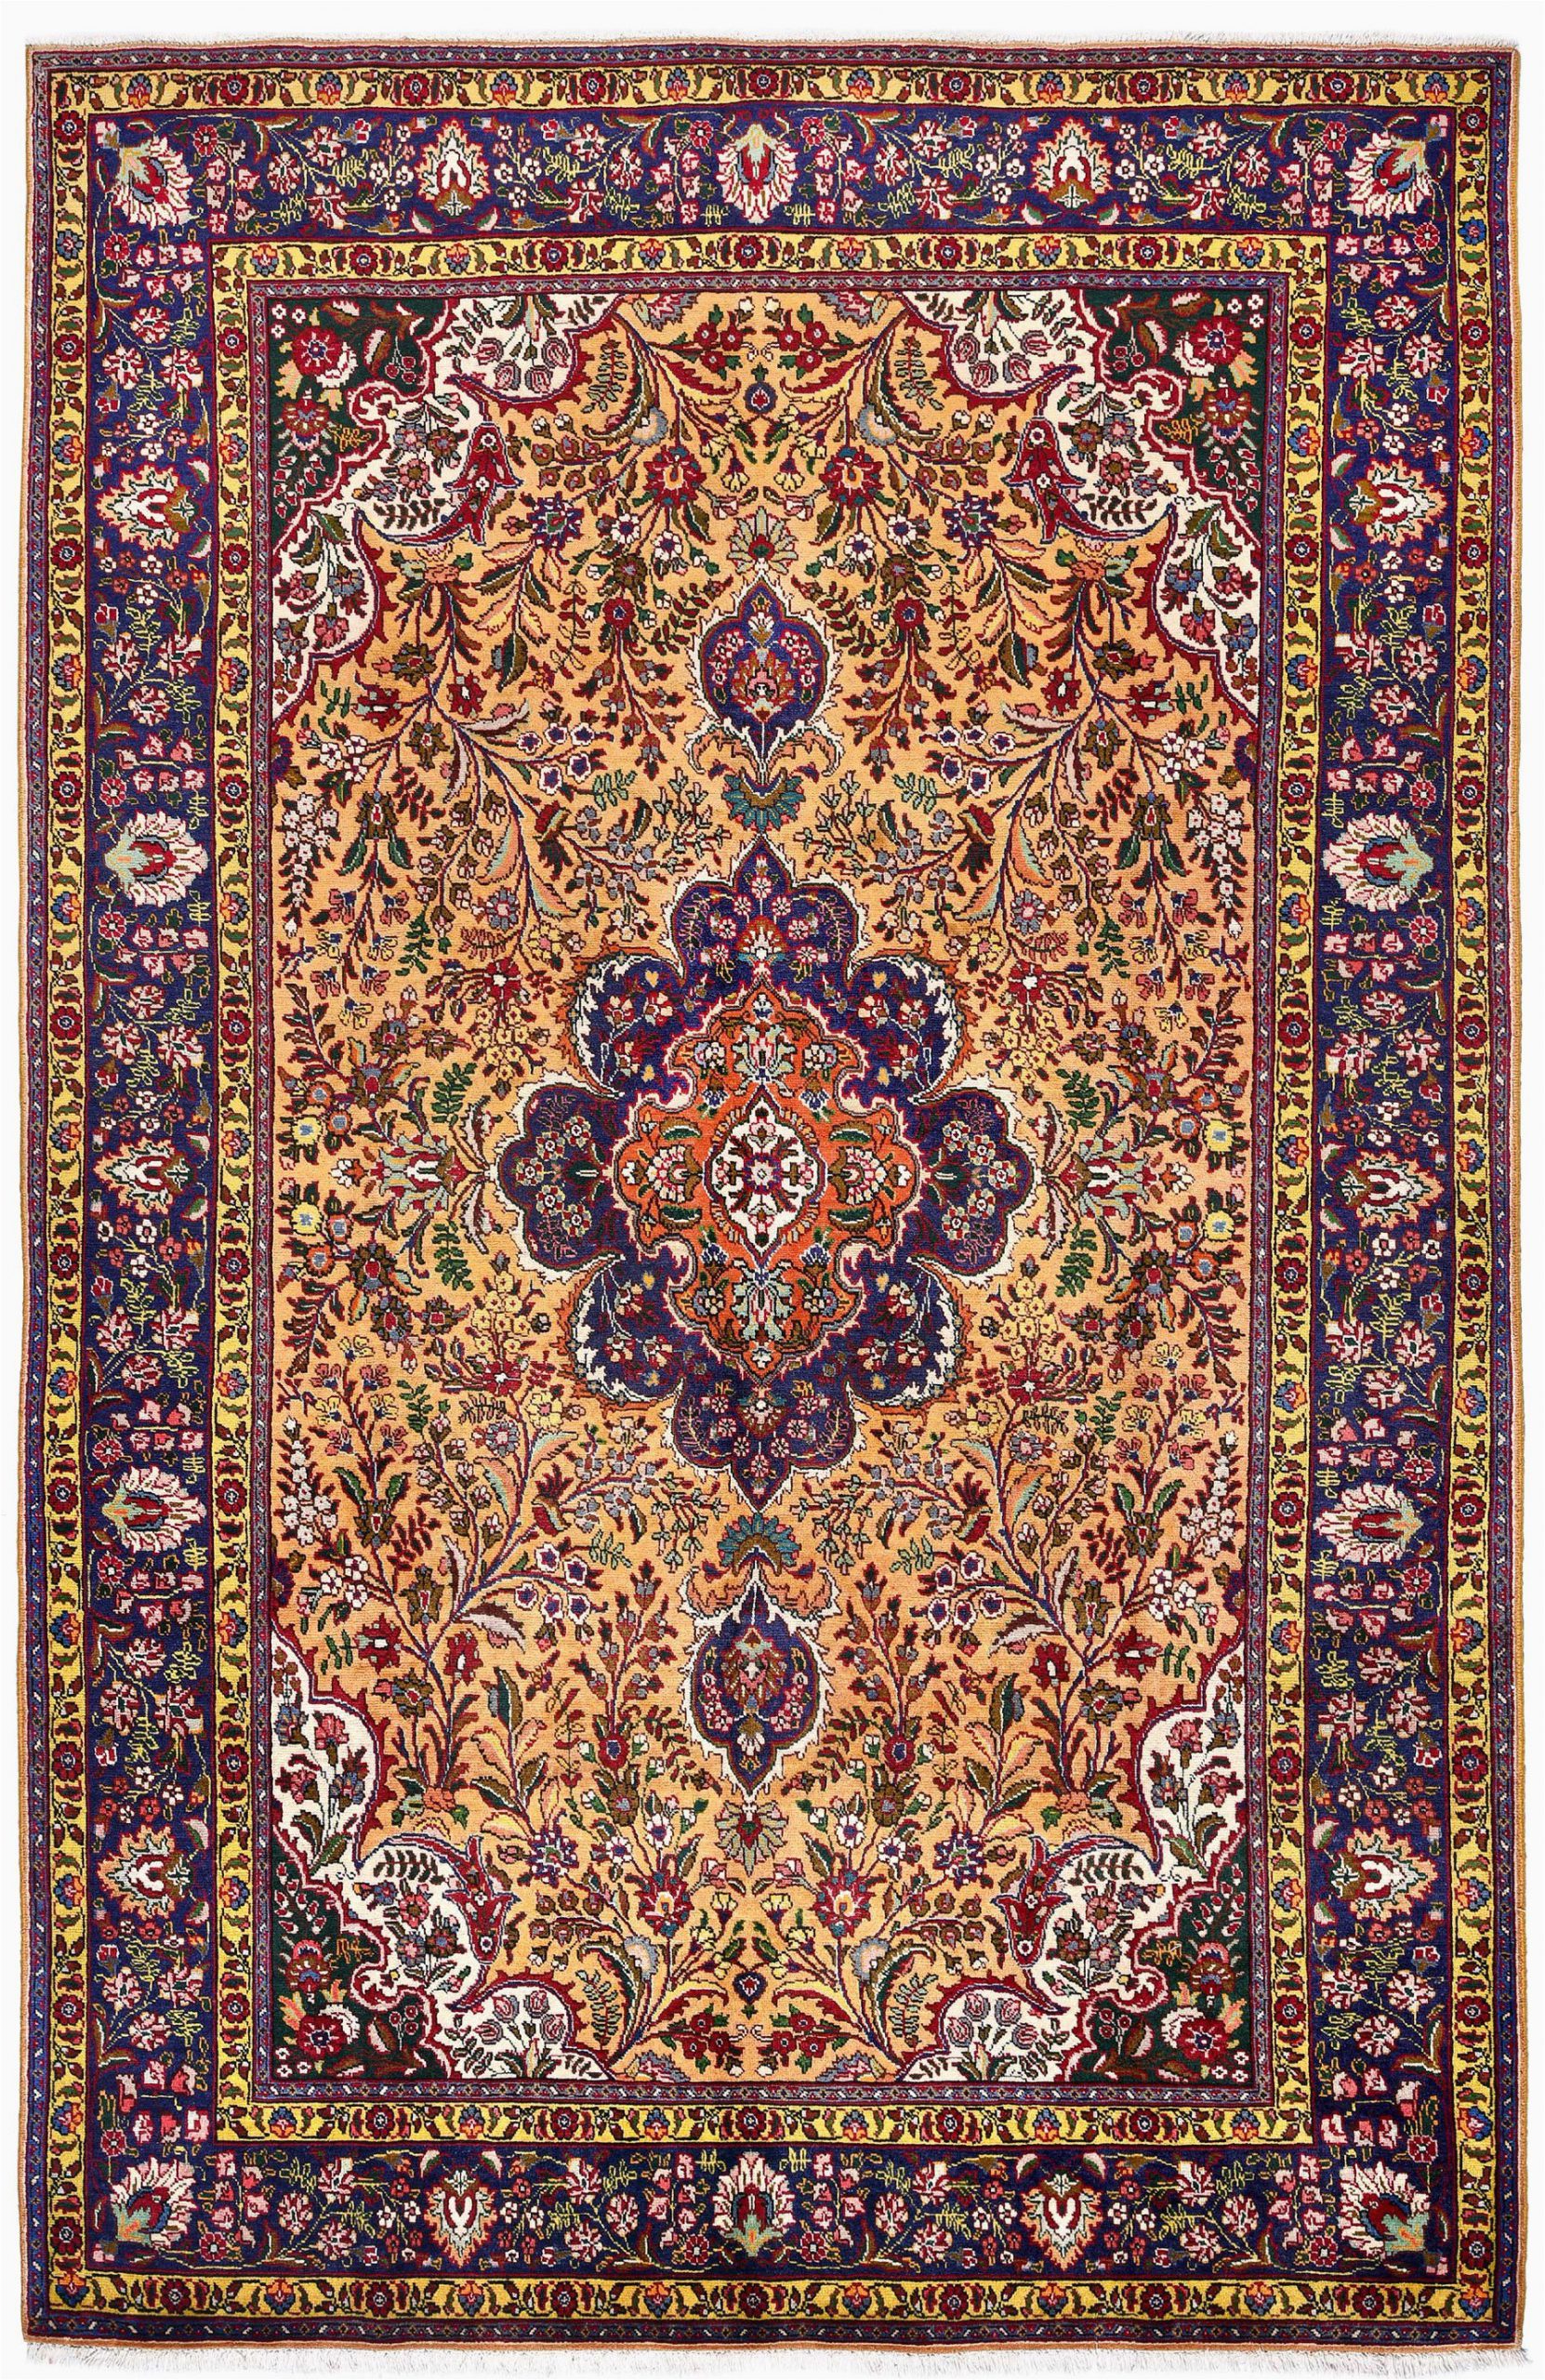 golden tabriz rug gold persian carpet for sale 2x3m dr401